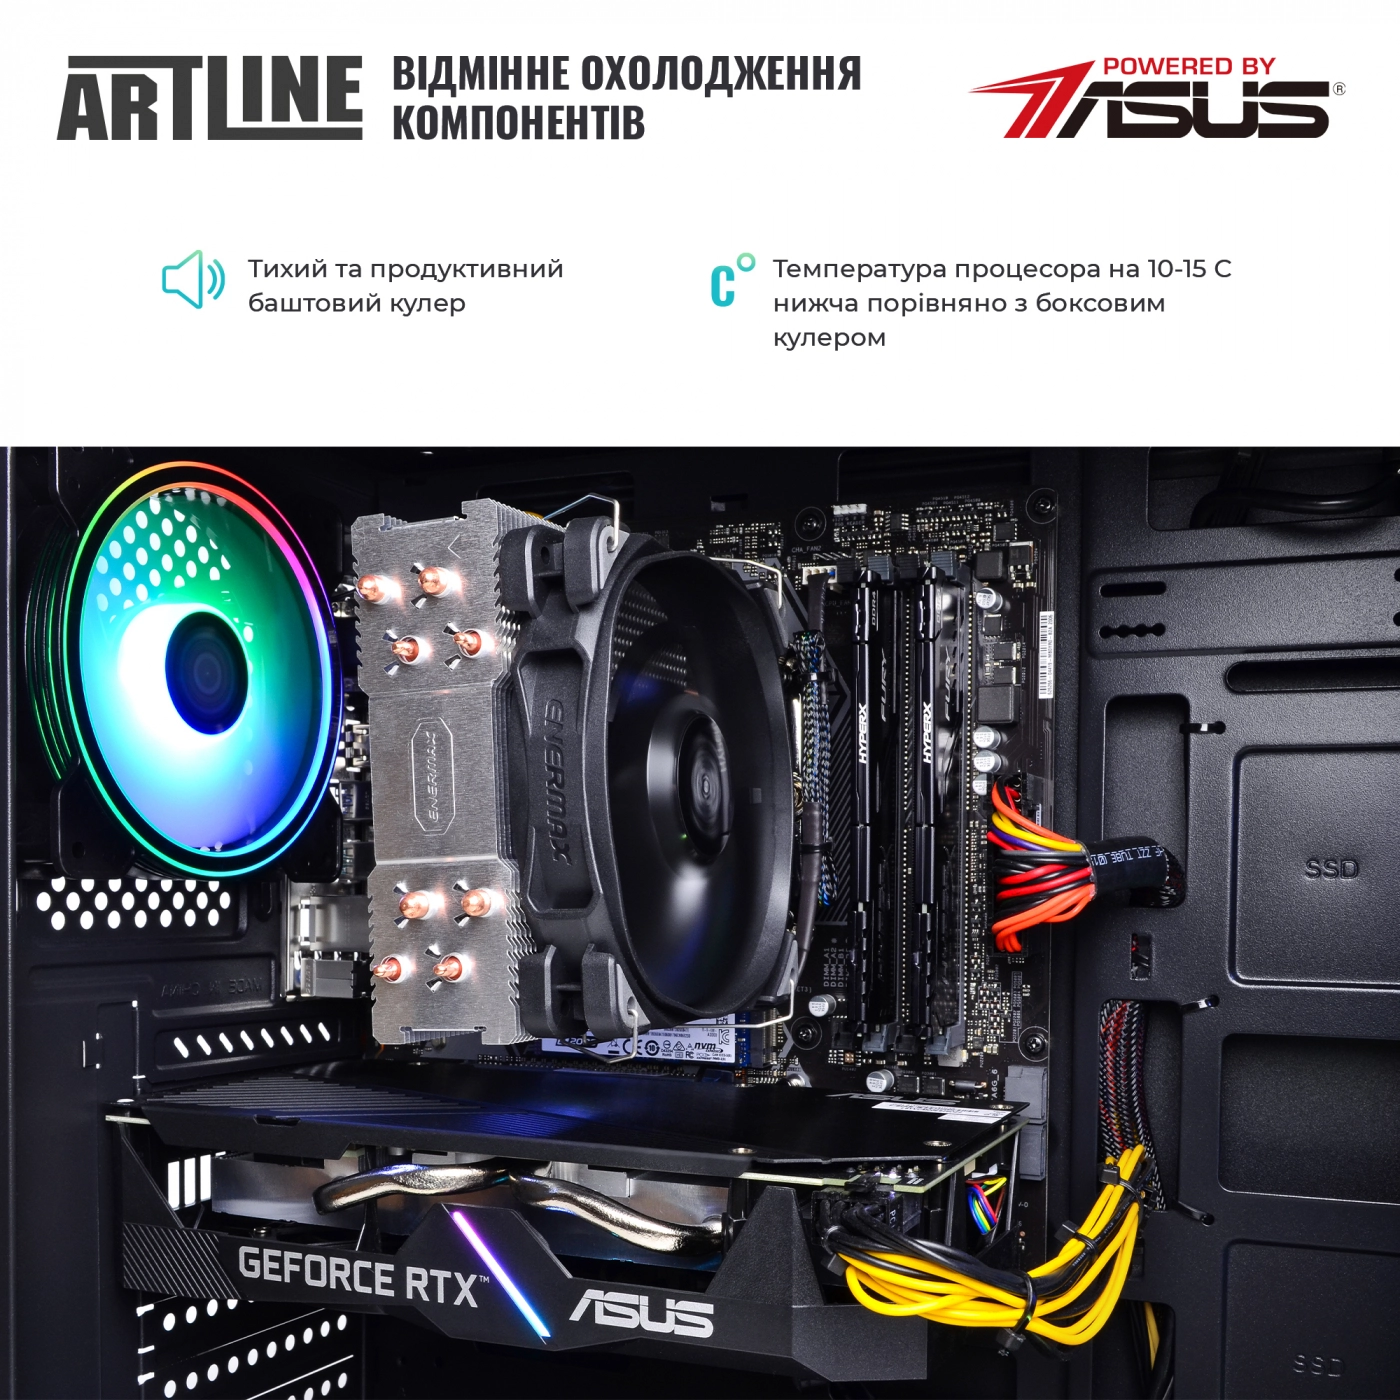 Купить Компьютер ARTLINE Gaming X77v41 - фото 7